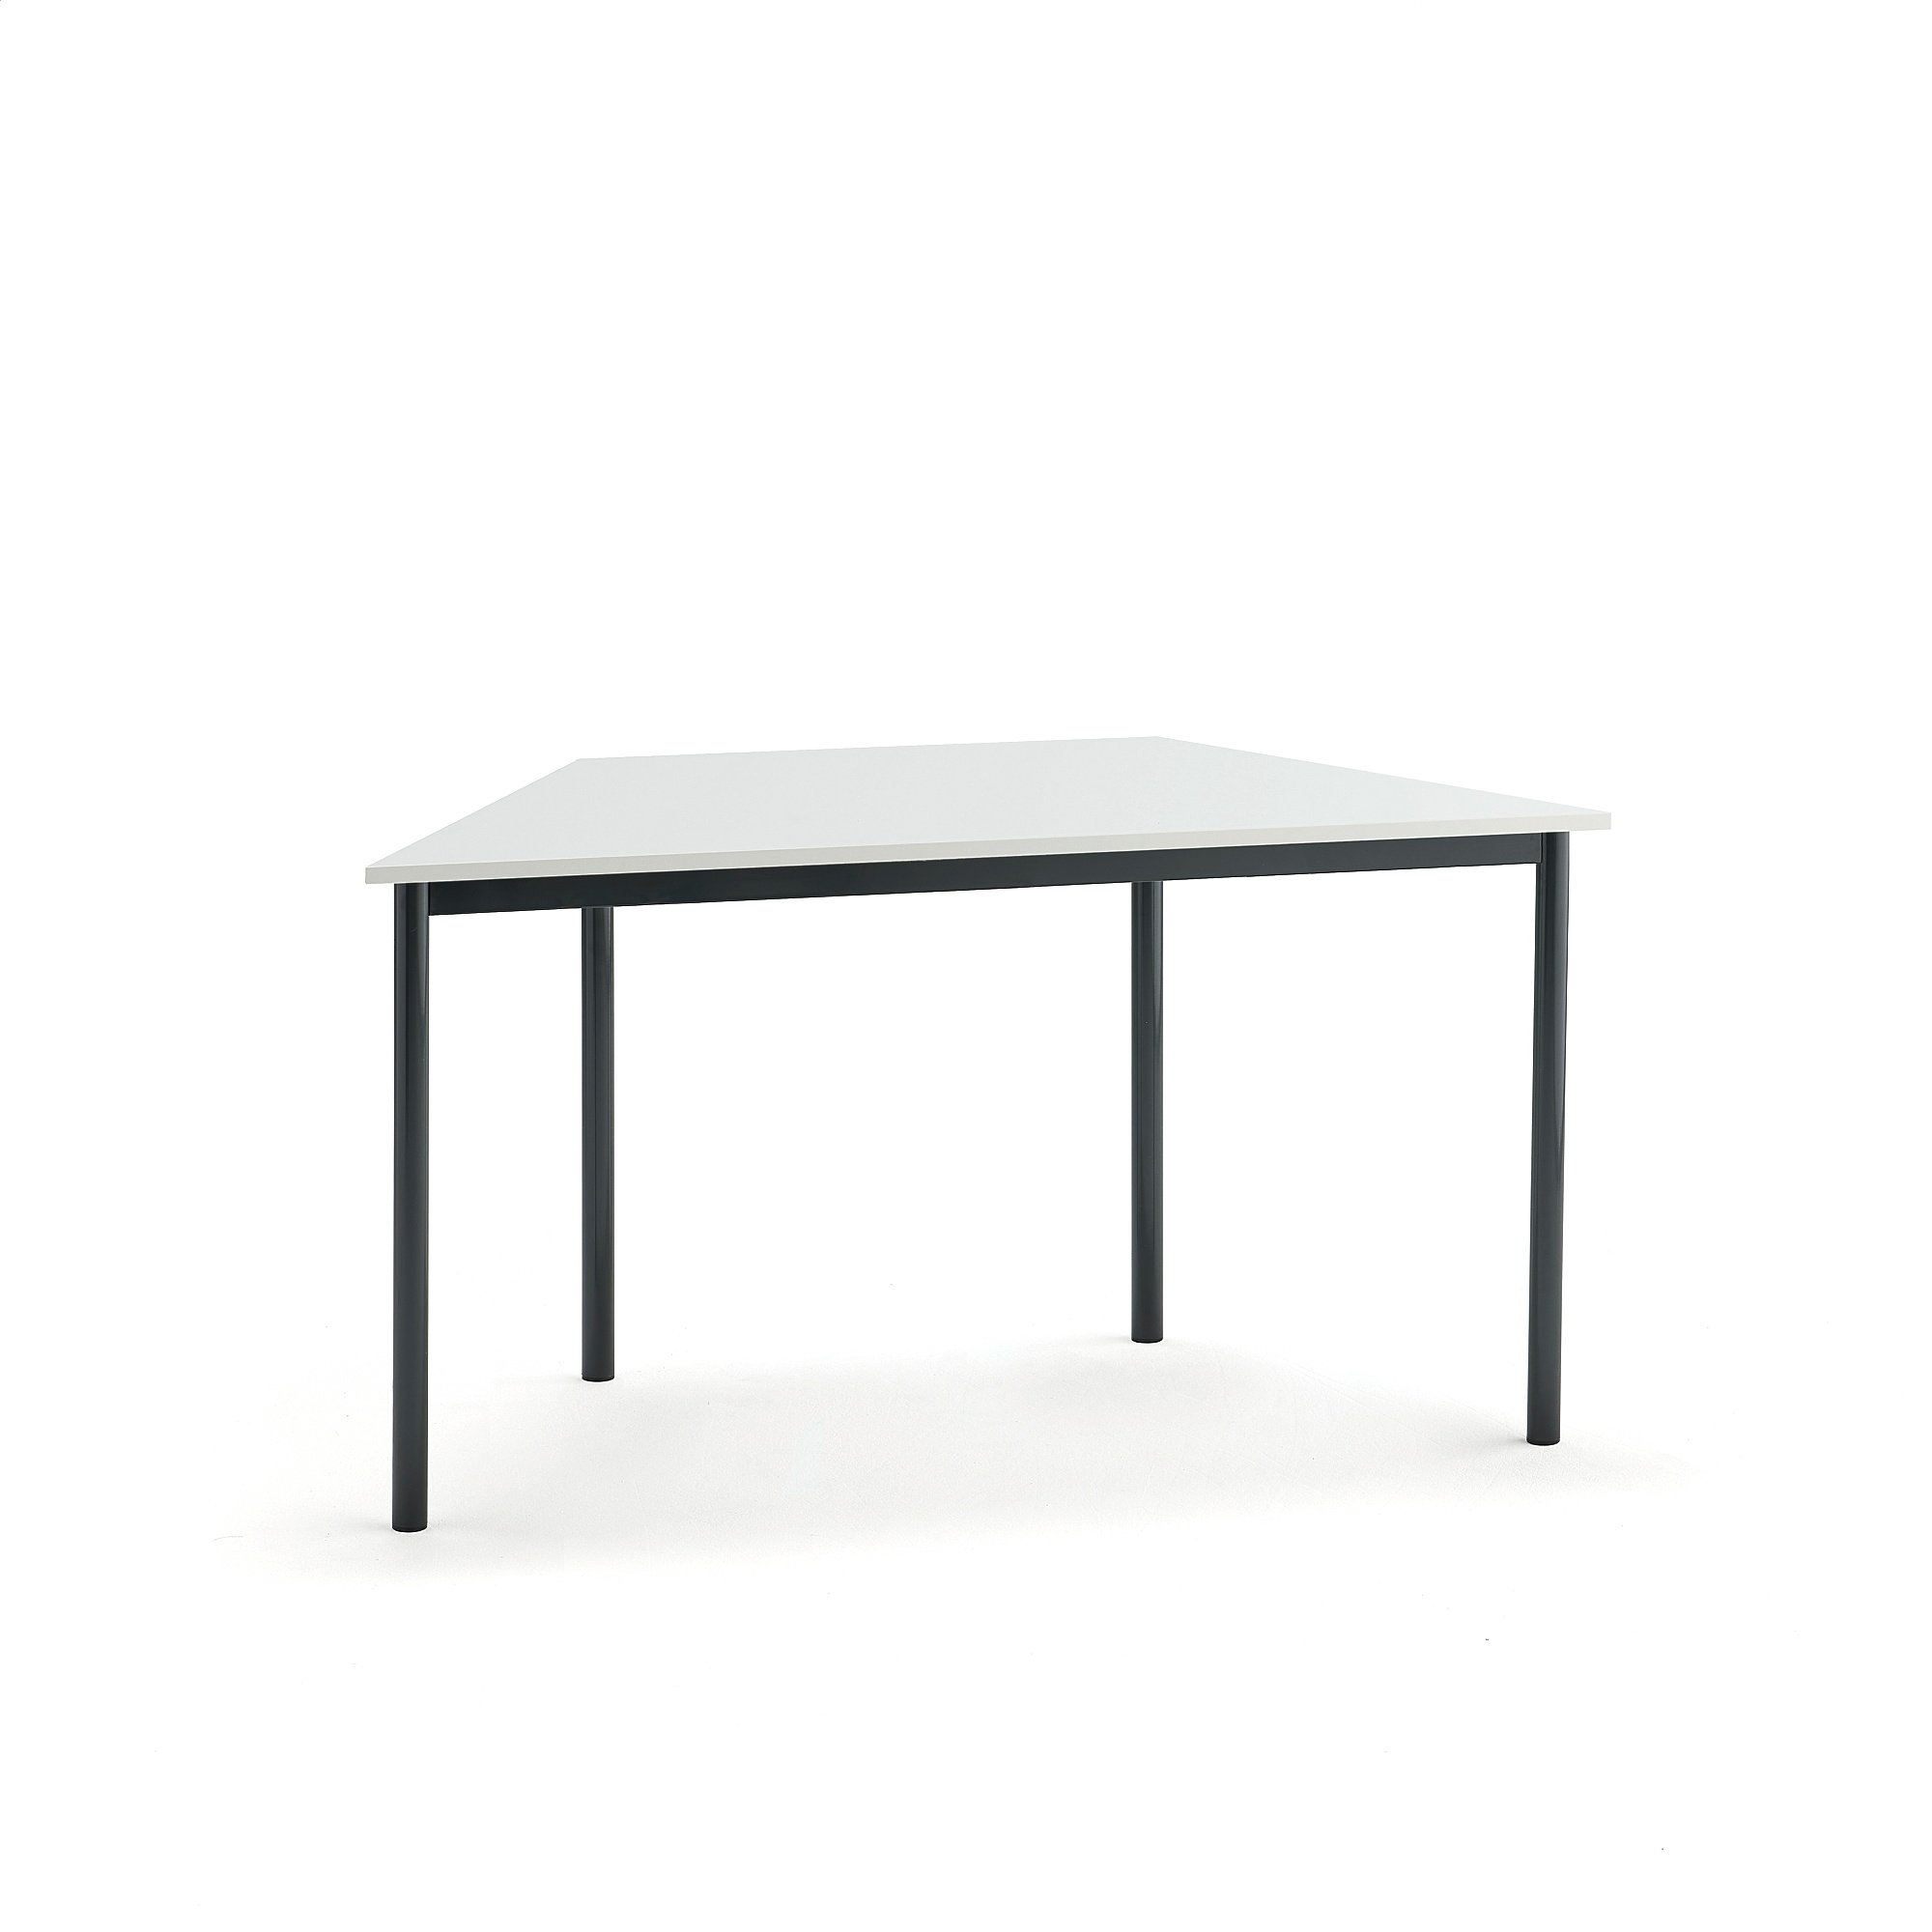 Stůl BORÅS TRAPETS, 1200x600x720 mm, antracitově šedé nohy, HPL deska, bílá